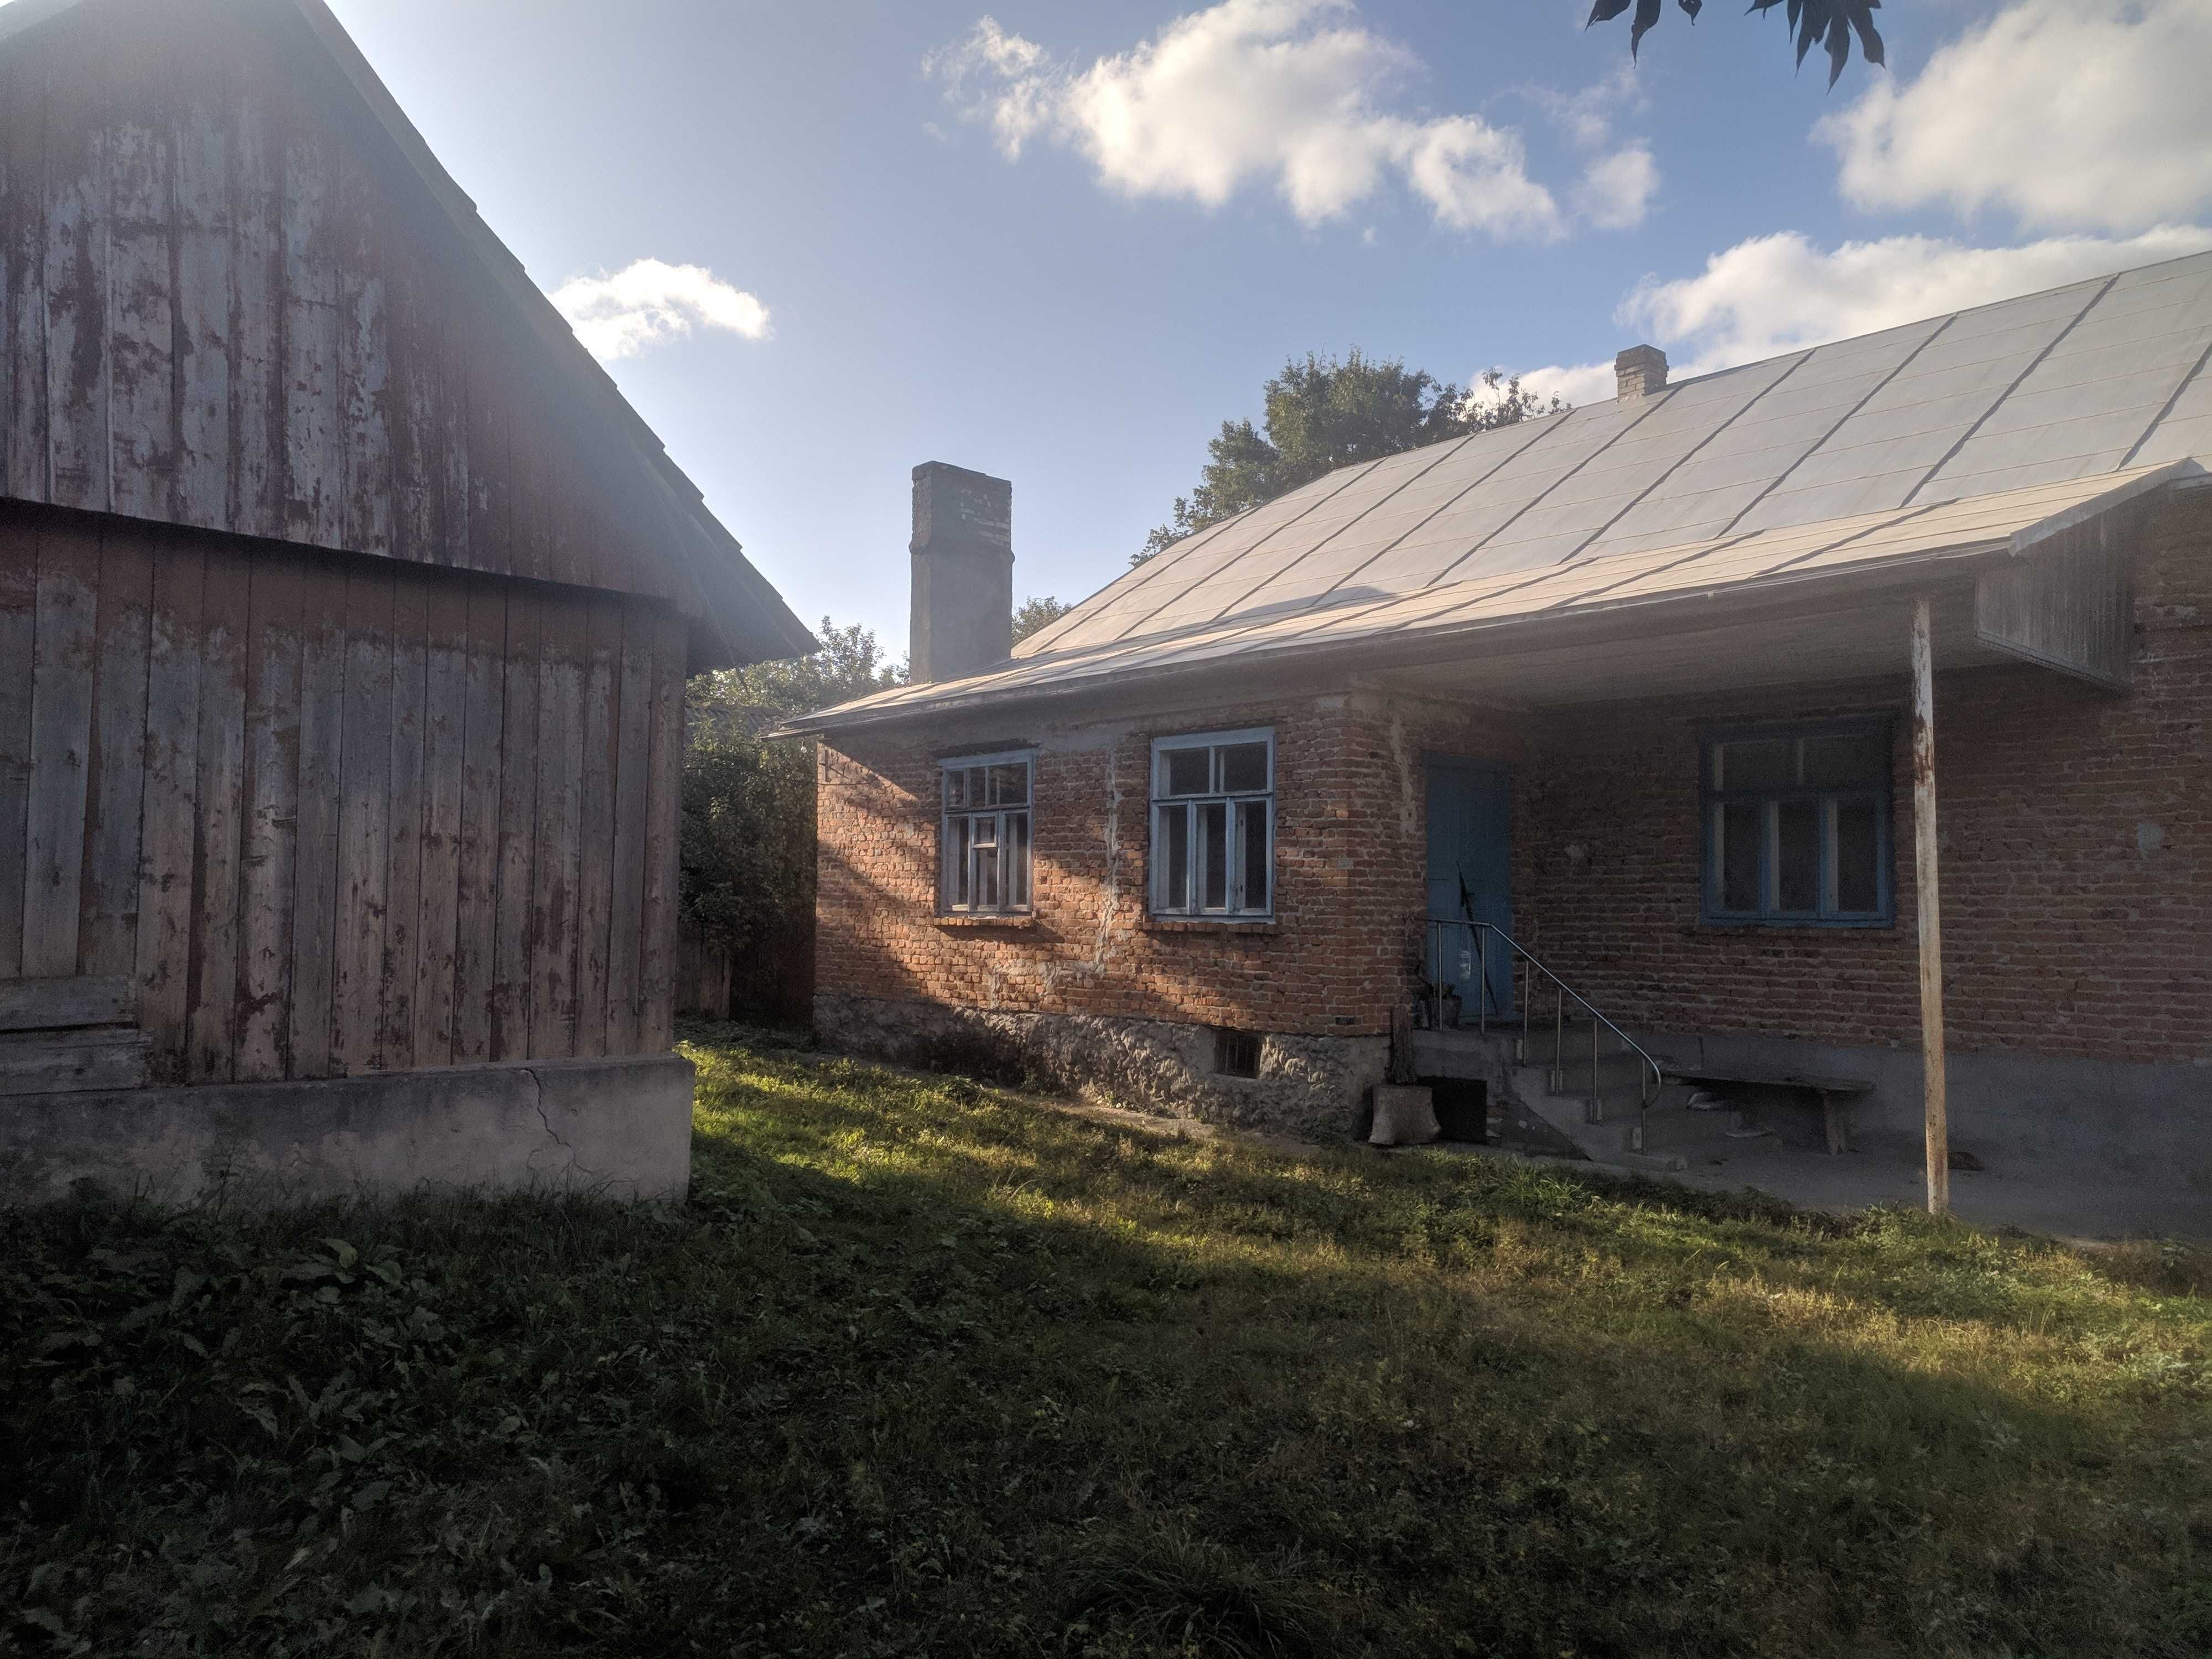 Будинок господарські споруди село дім Тернопільська обл Болязуби